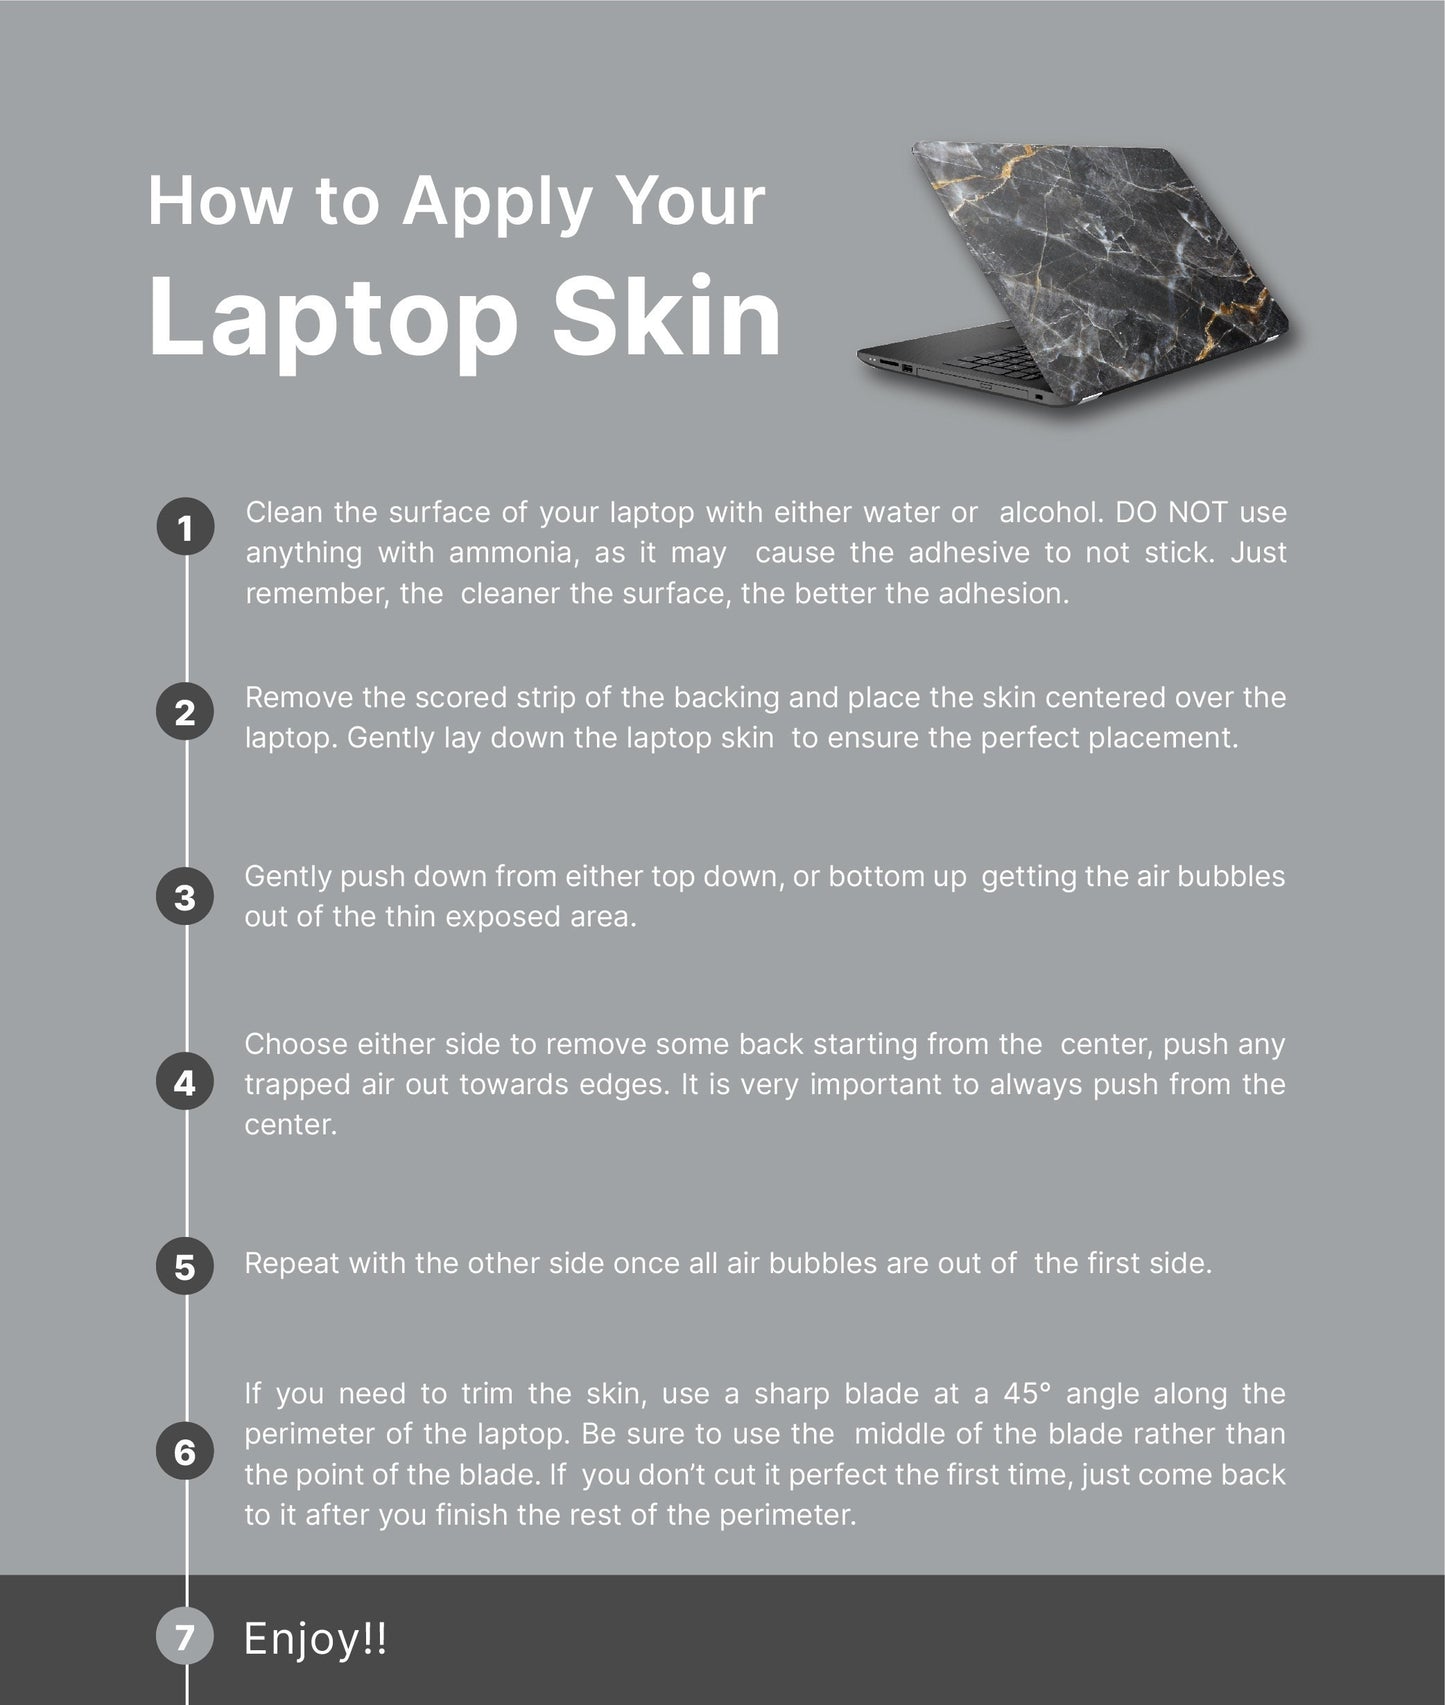 Boho Moths Laptop Skin, Laptop Cover, Laptop Skins, Removable Laptop Skins, Laptop Decal, Customized Laptop Skin, Laptop Stickers 249